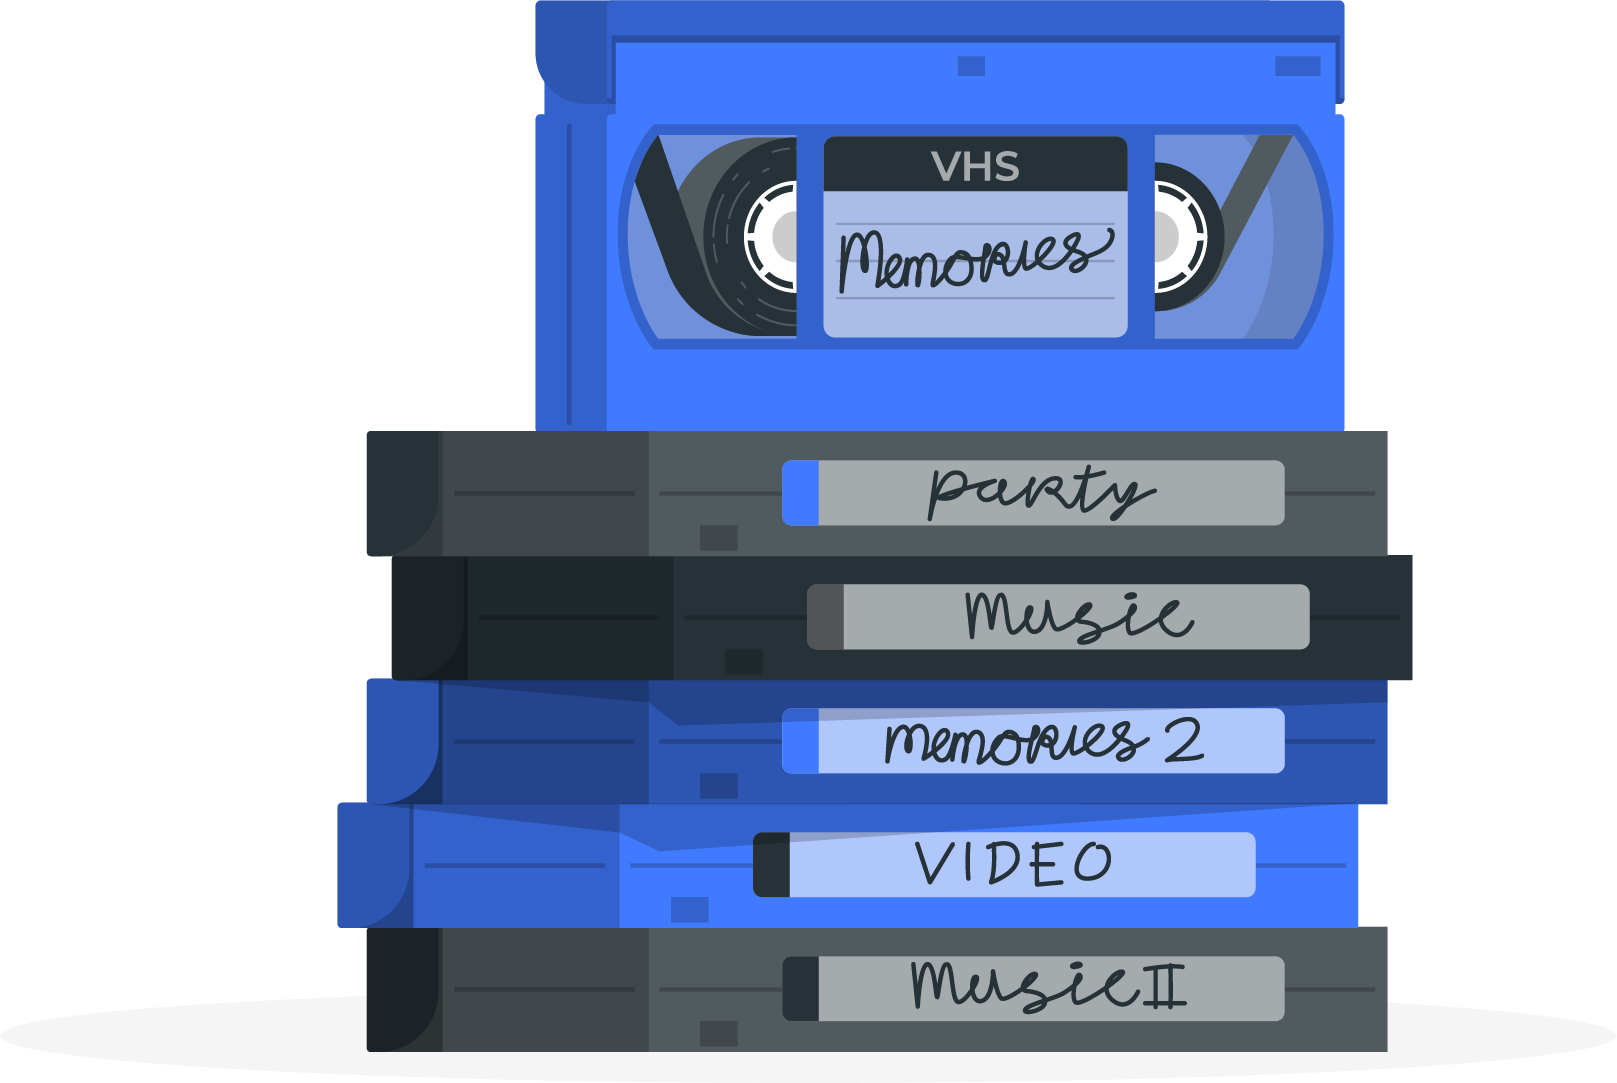 Videoband digitaliseren, belangrijke informatie en kosten.